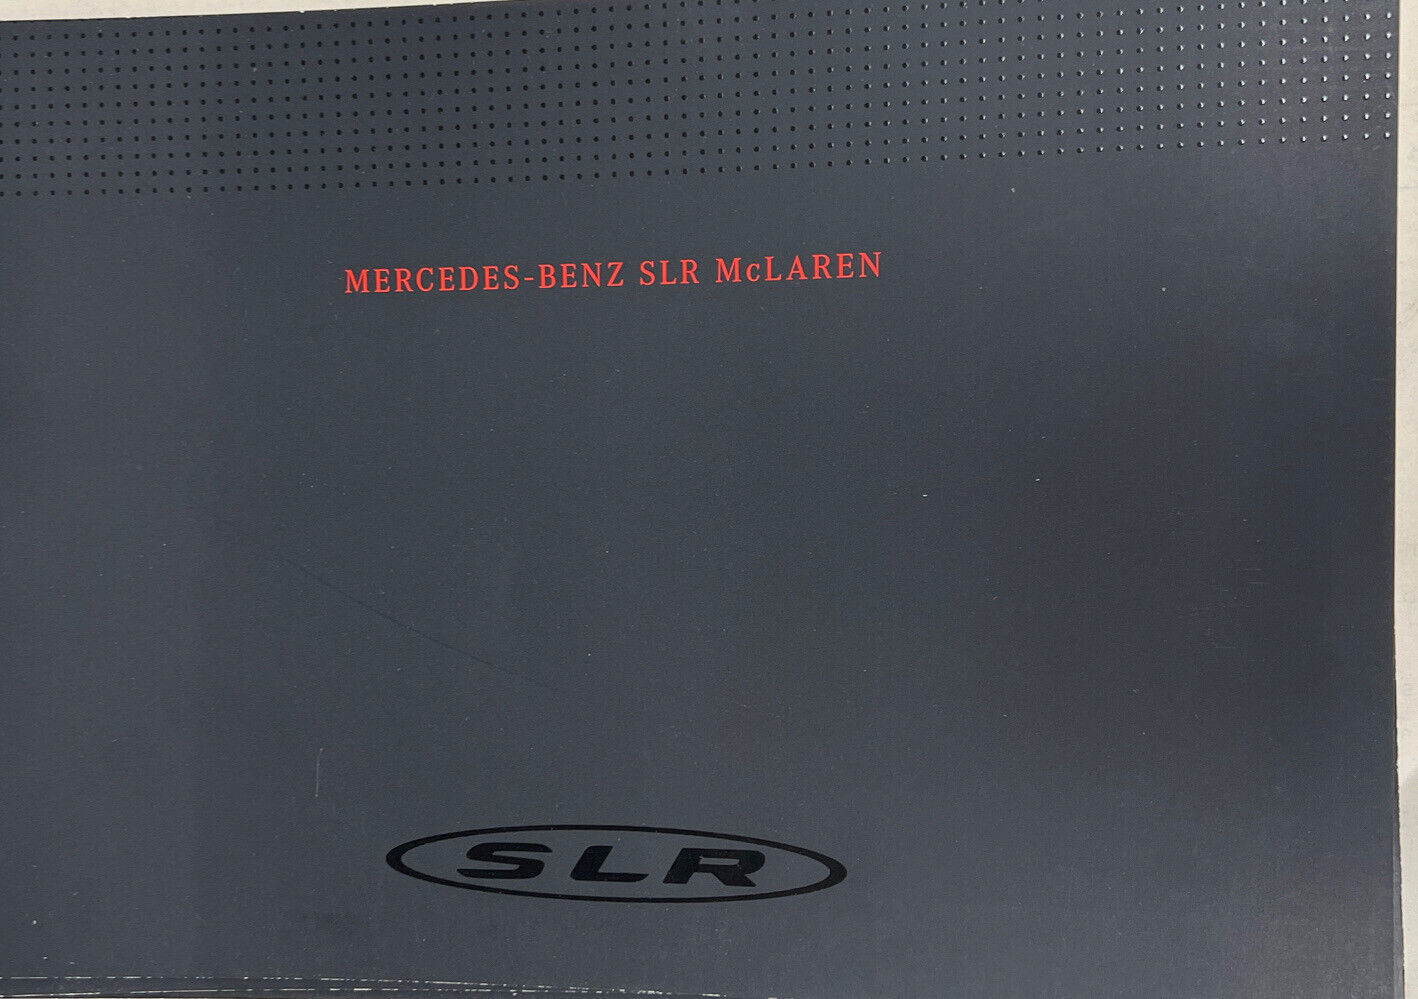 2004 2005 Mercedes-Benz SLR McLaren Sales Brochure OEM Dealer Catalog 20 Pages